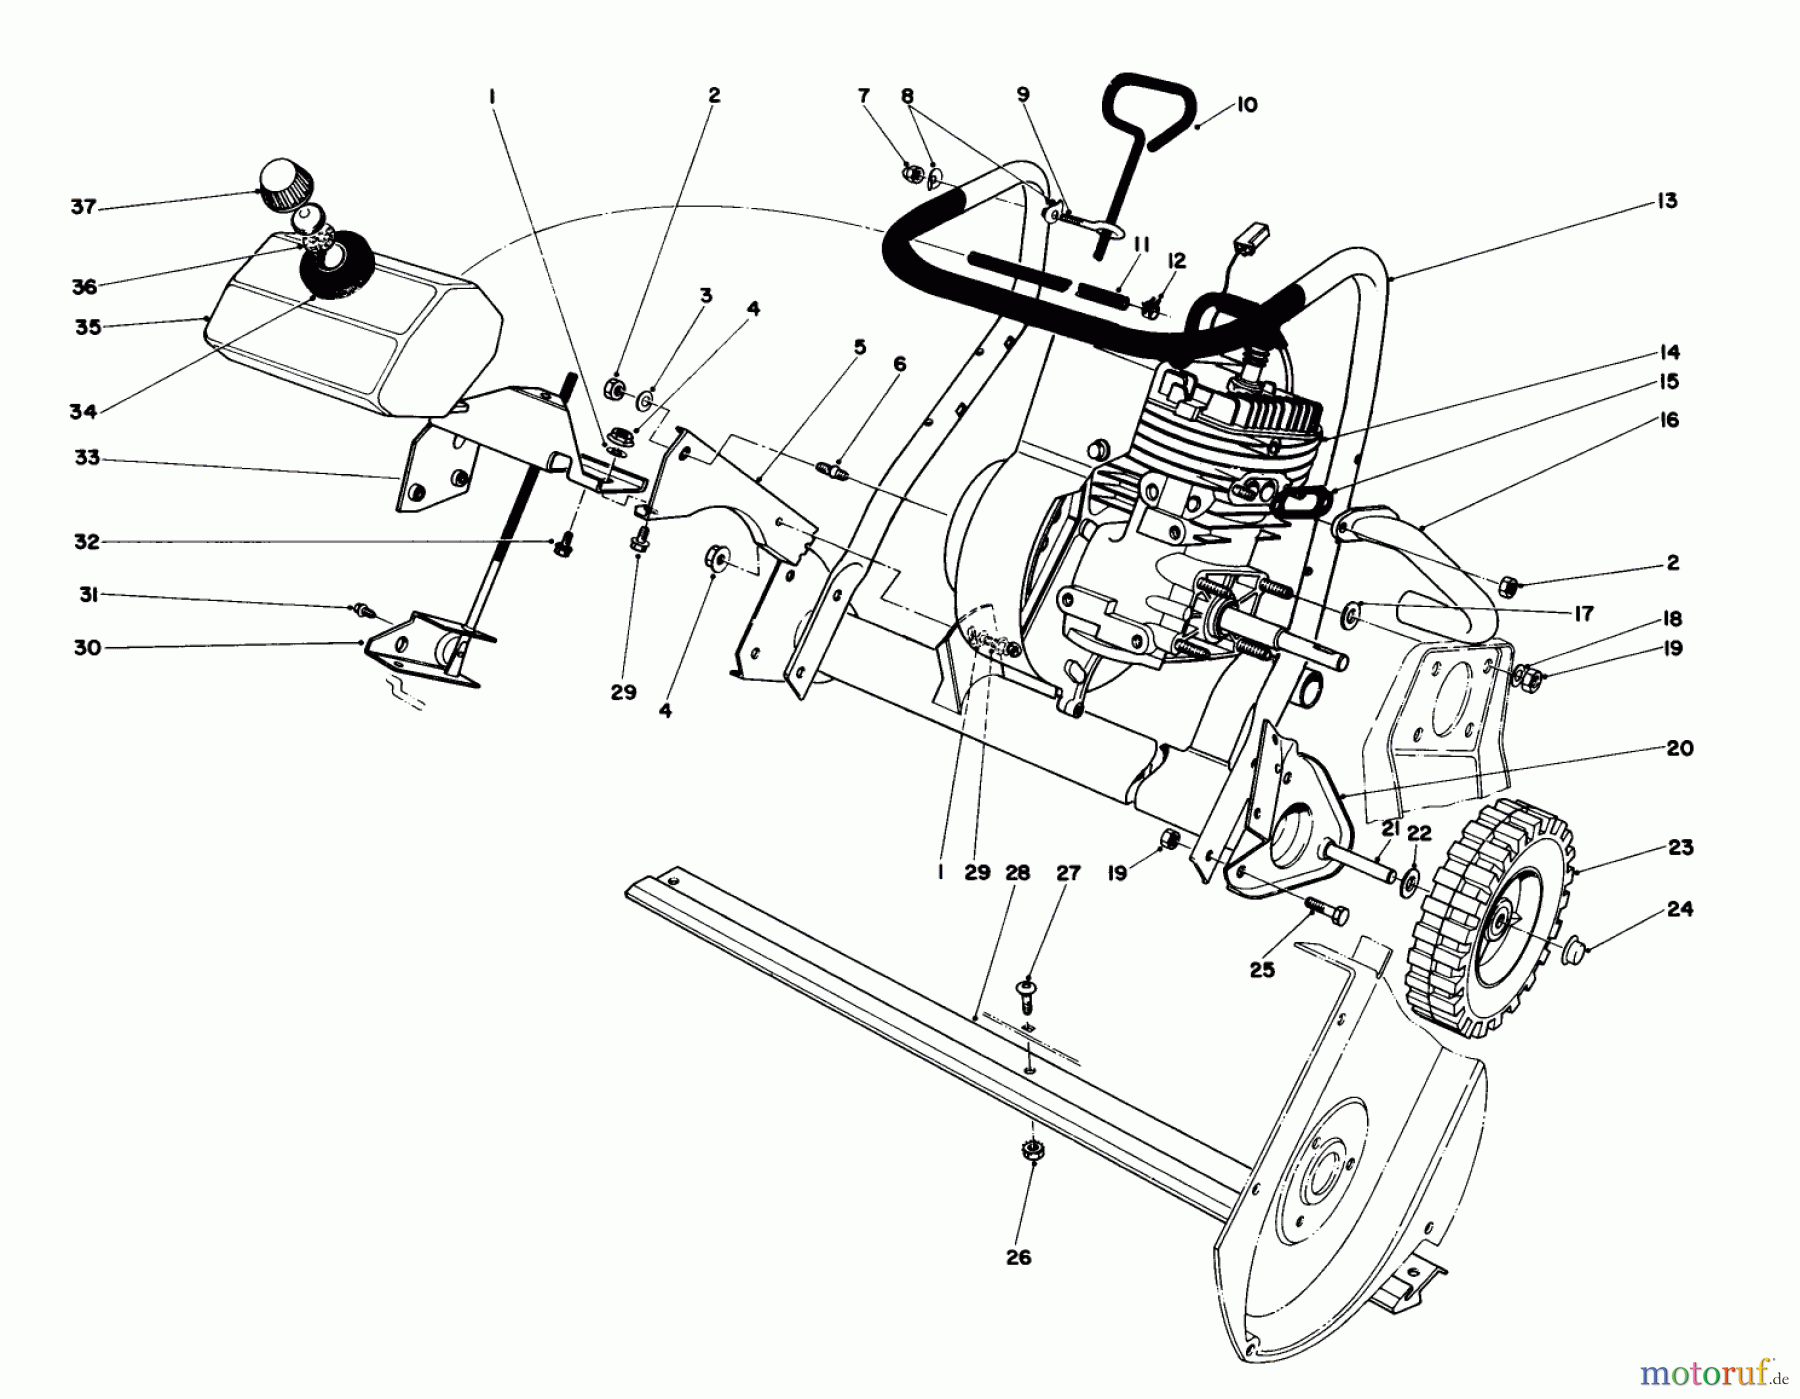  Toro Neu Snow Blowers/Snow Throwers Seite 1 38165 (S-620) - Toro S-620 Snowthrower, 1985 (5000001-5010000) ENGINE ASSEMBLY